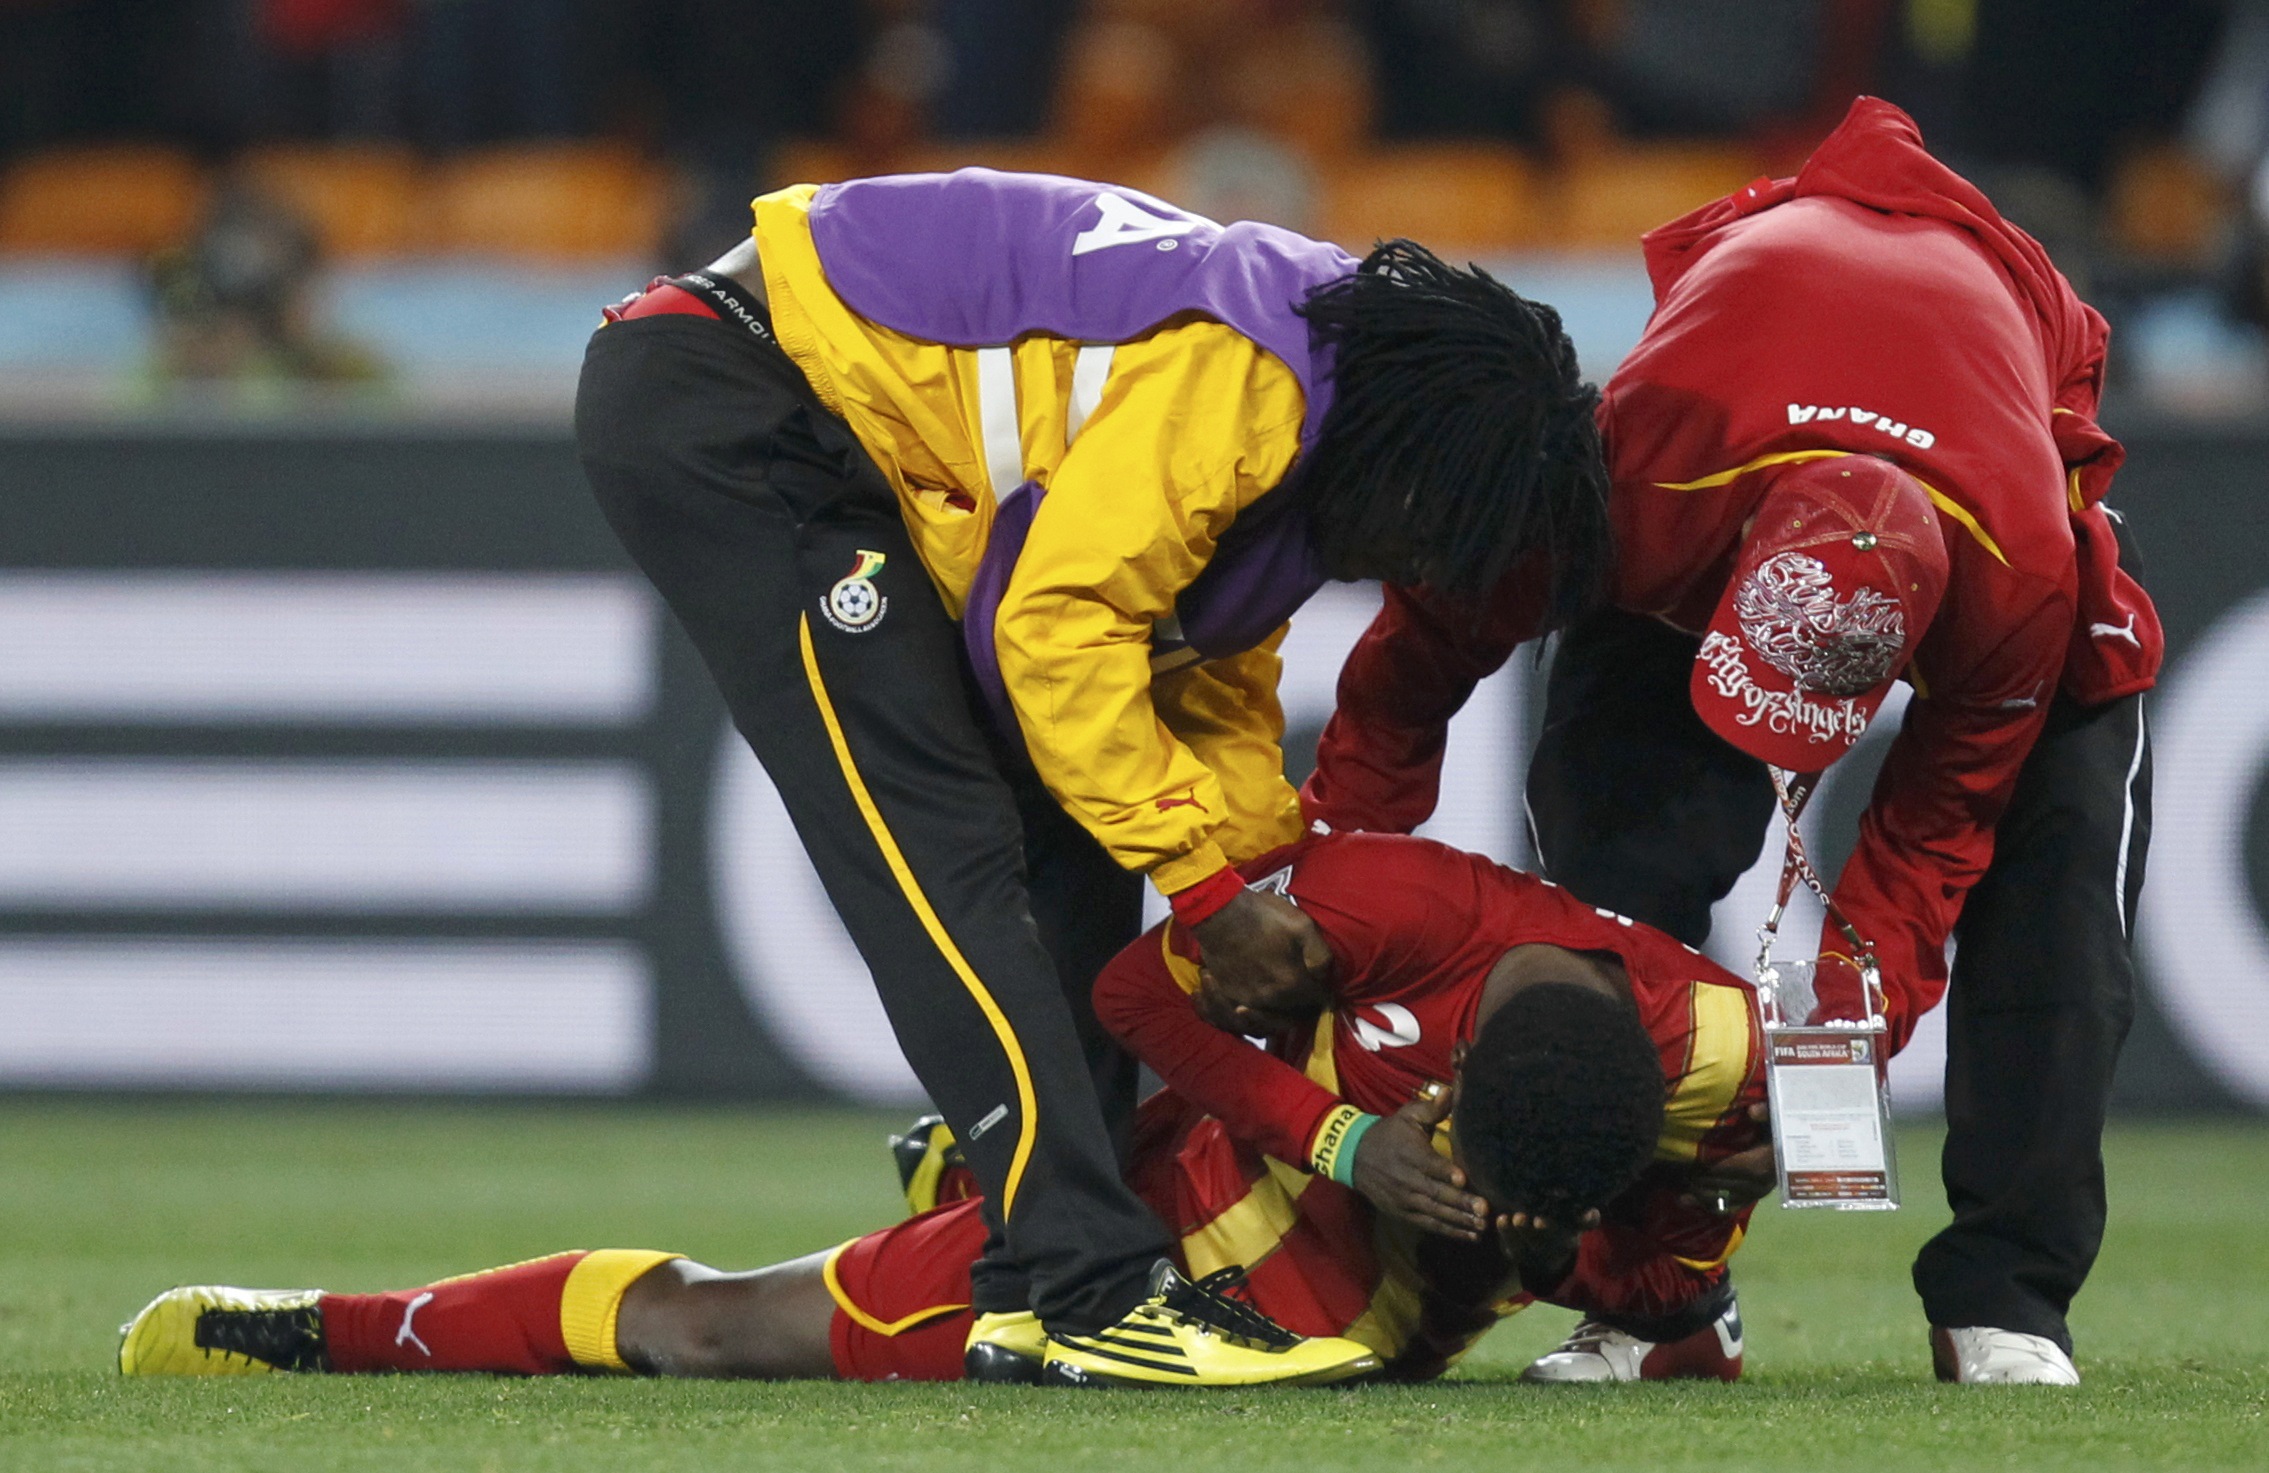 Ο Μοιραίος της Γκάνας, Γκίαν Ασαμόα ξέσπασε σε κλάματα μετά το τέλος του αγώνα, ΦΩΤΟ REUTERS.